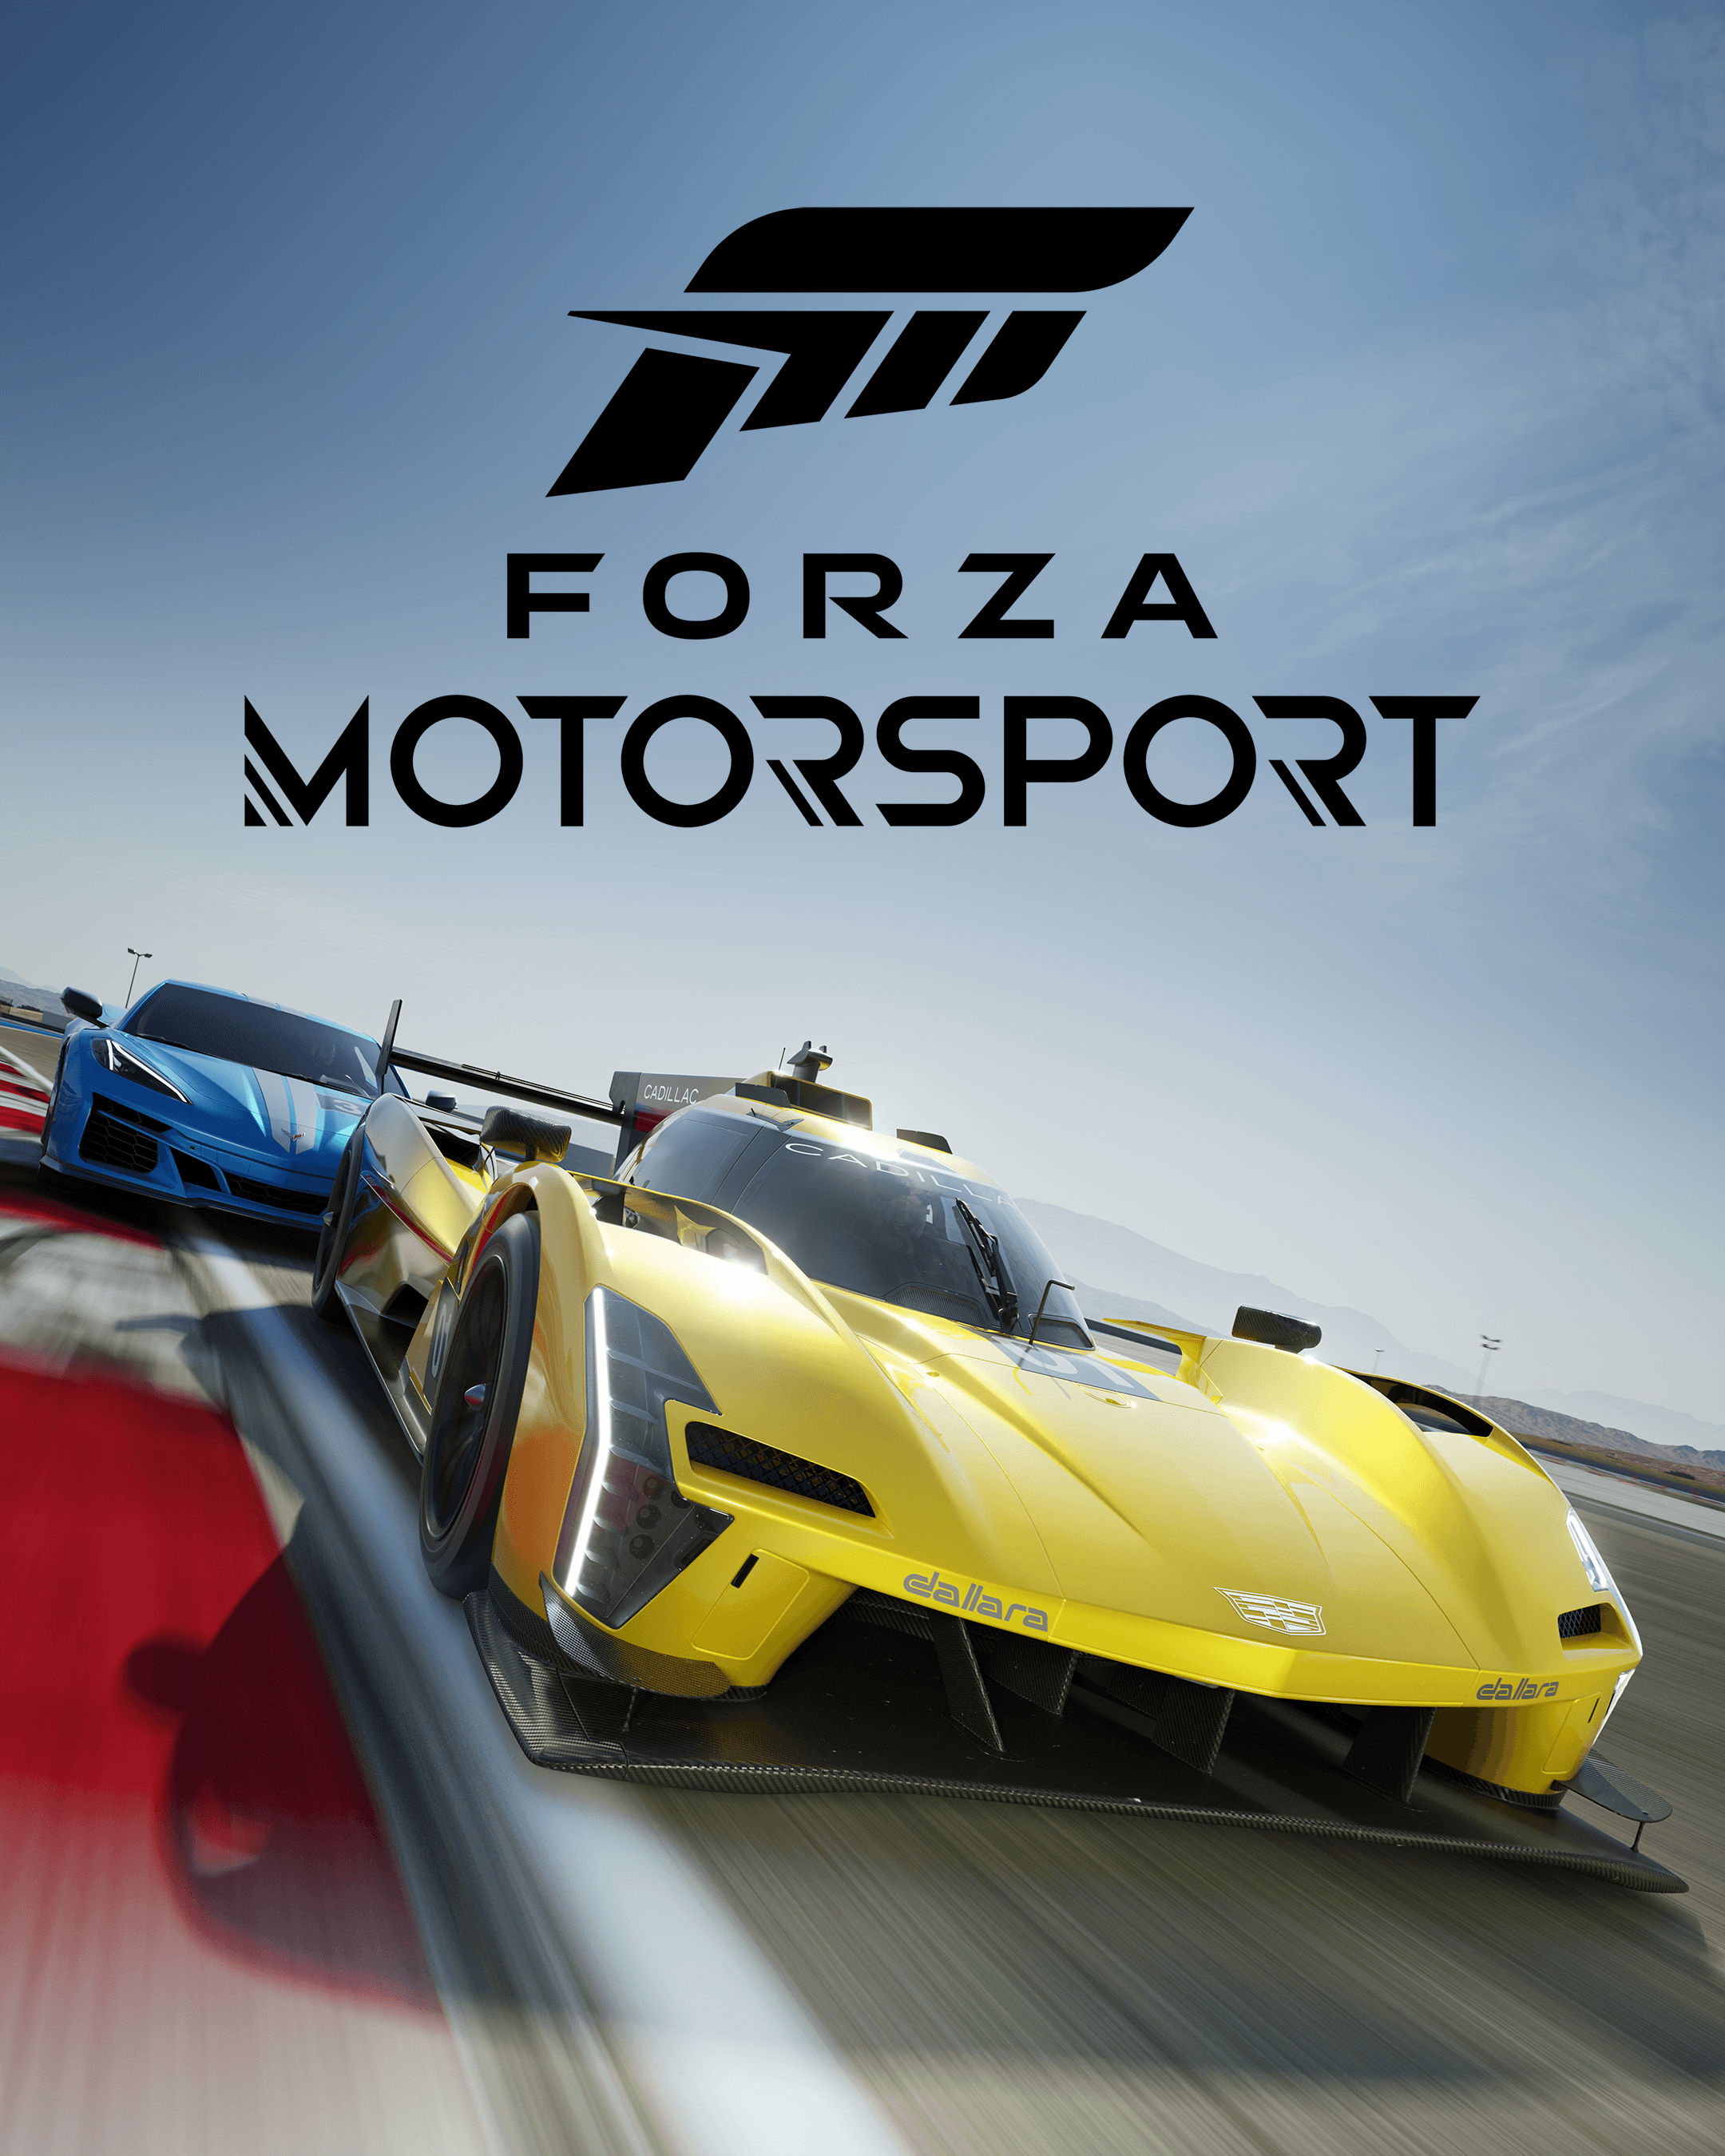 Forza_Motorsport_KeyArt_4x5_RGB_F02 - 2160x2700.png